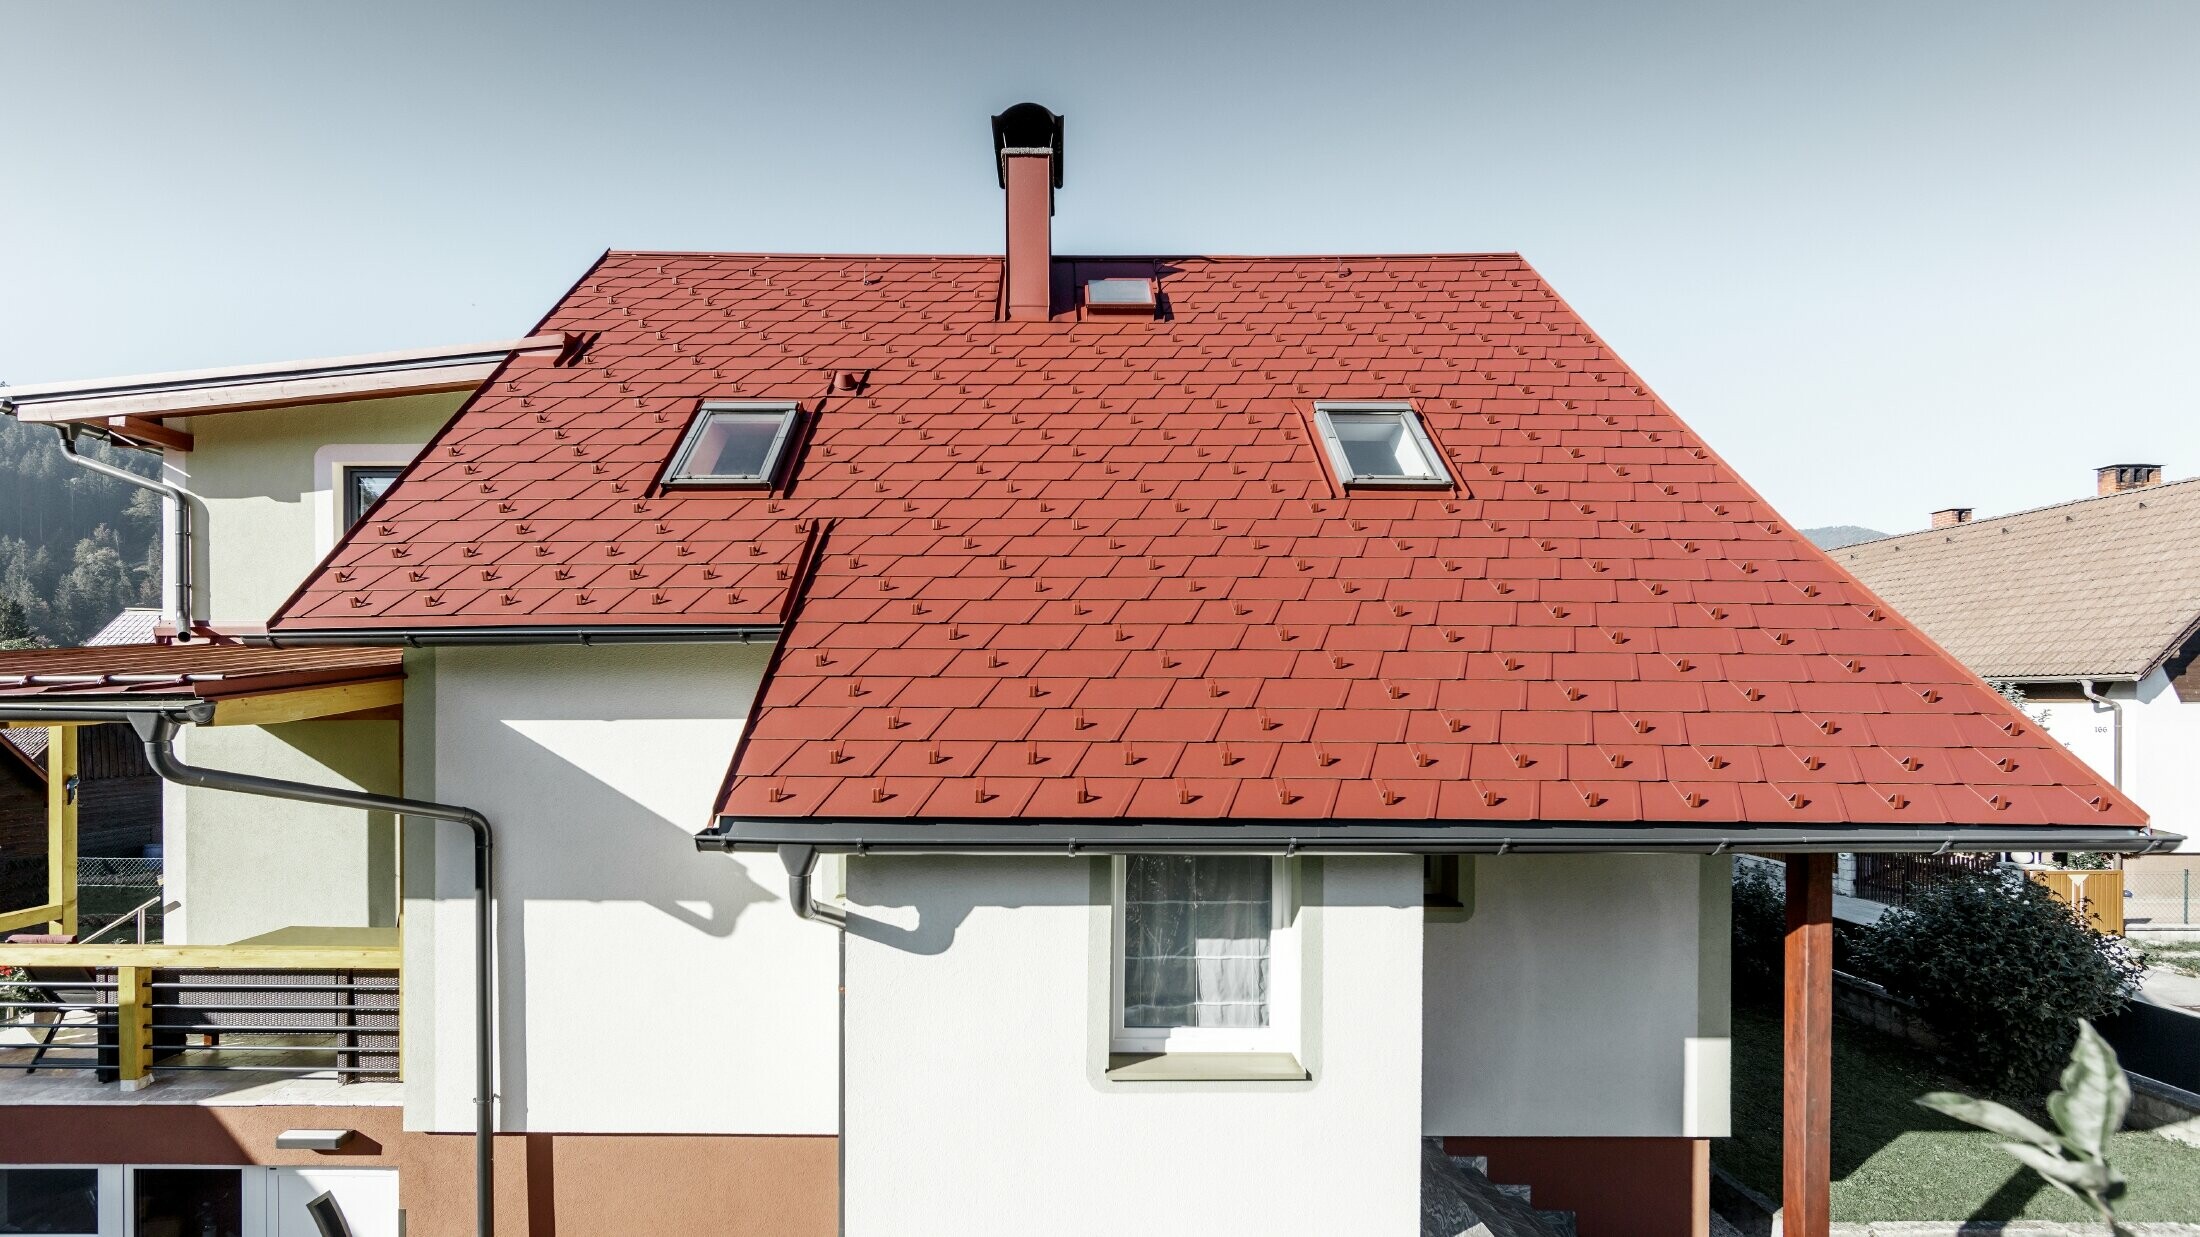 Renoverat enfamiljshus med nytt tak från PREFA med takshingel  DS.19 i färgen oxidröd.